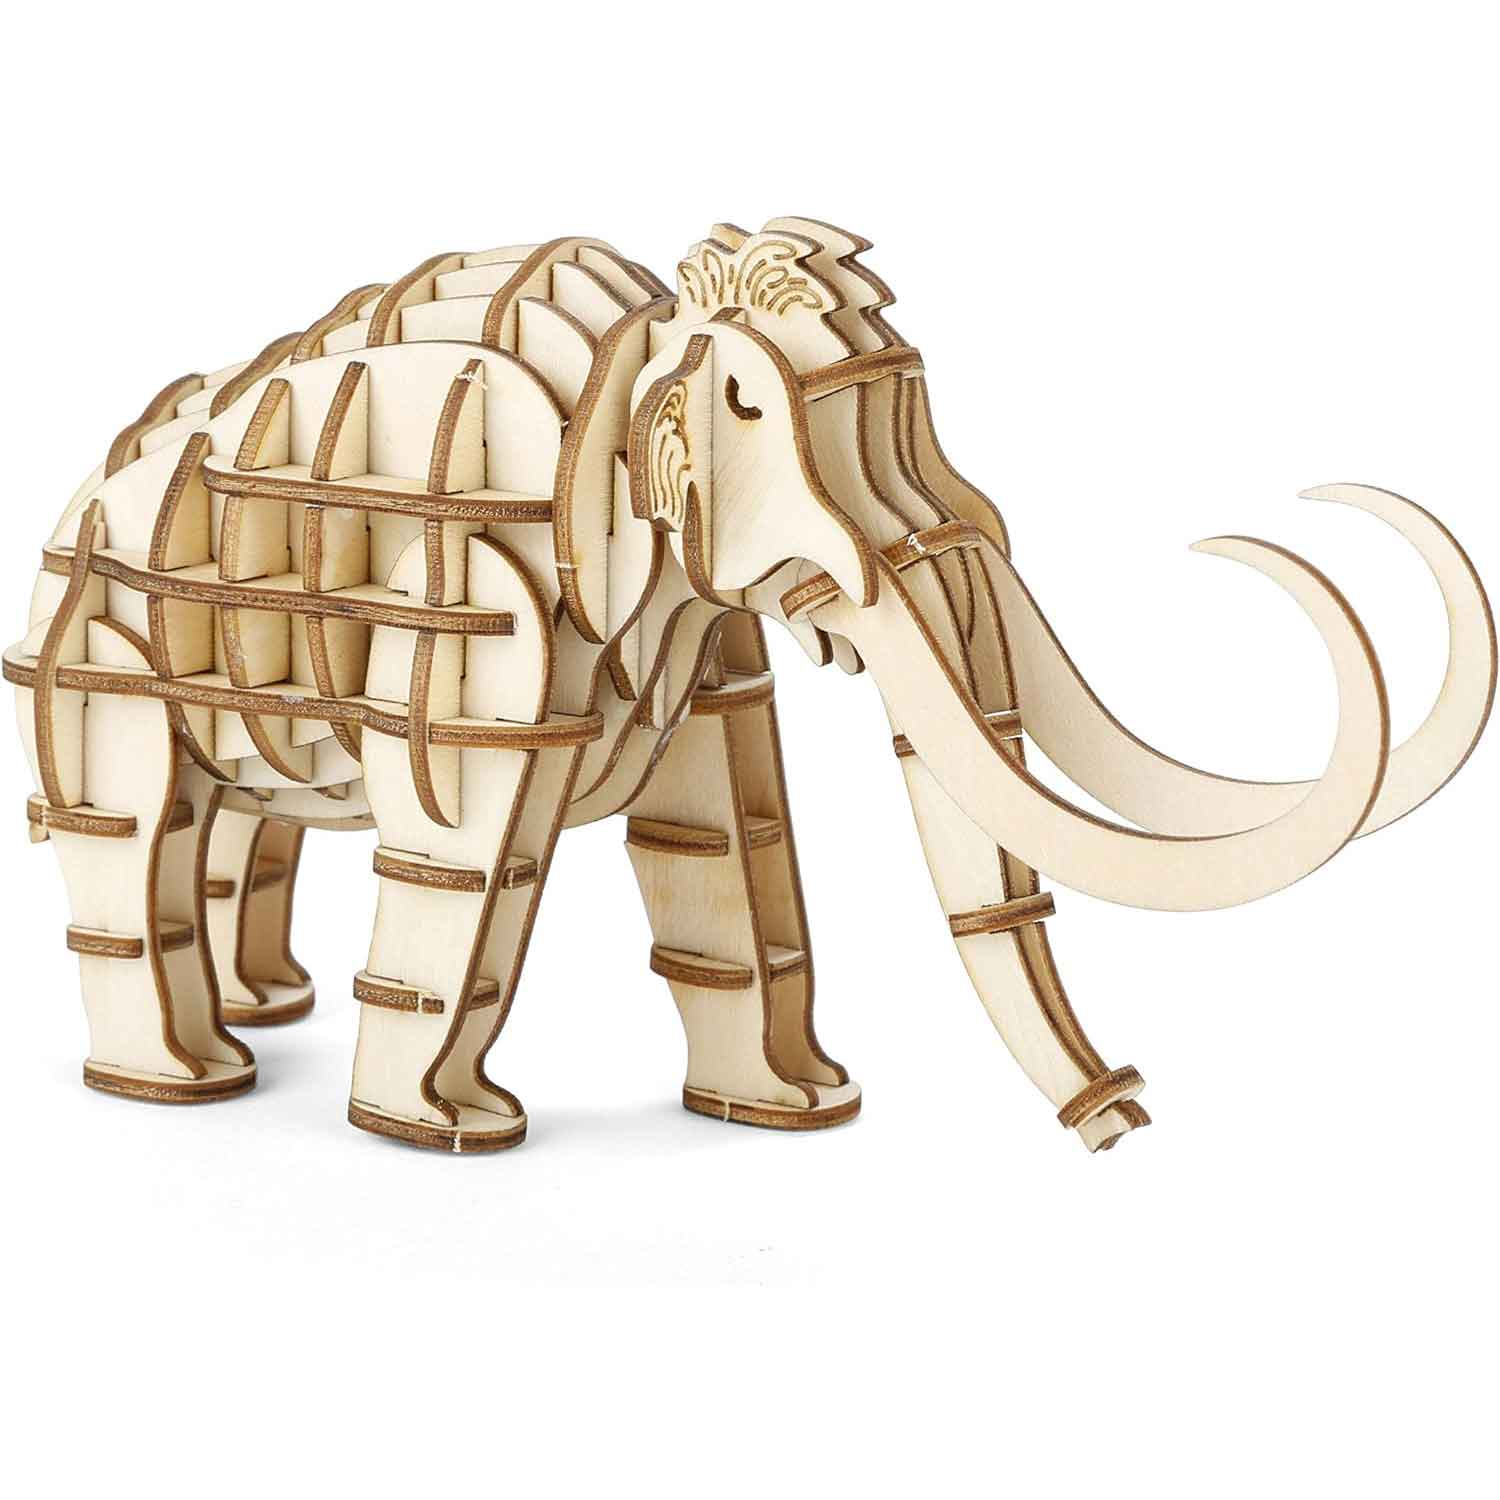 Mammut-Wooly-Mammoth-3D-Holzpuzzle-v-Kikkerland-berlindeluxe-mahmut-holz